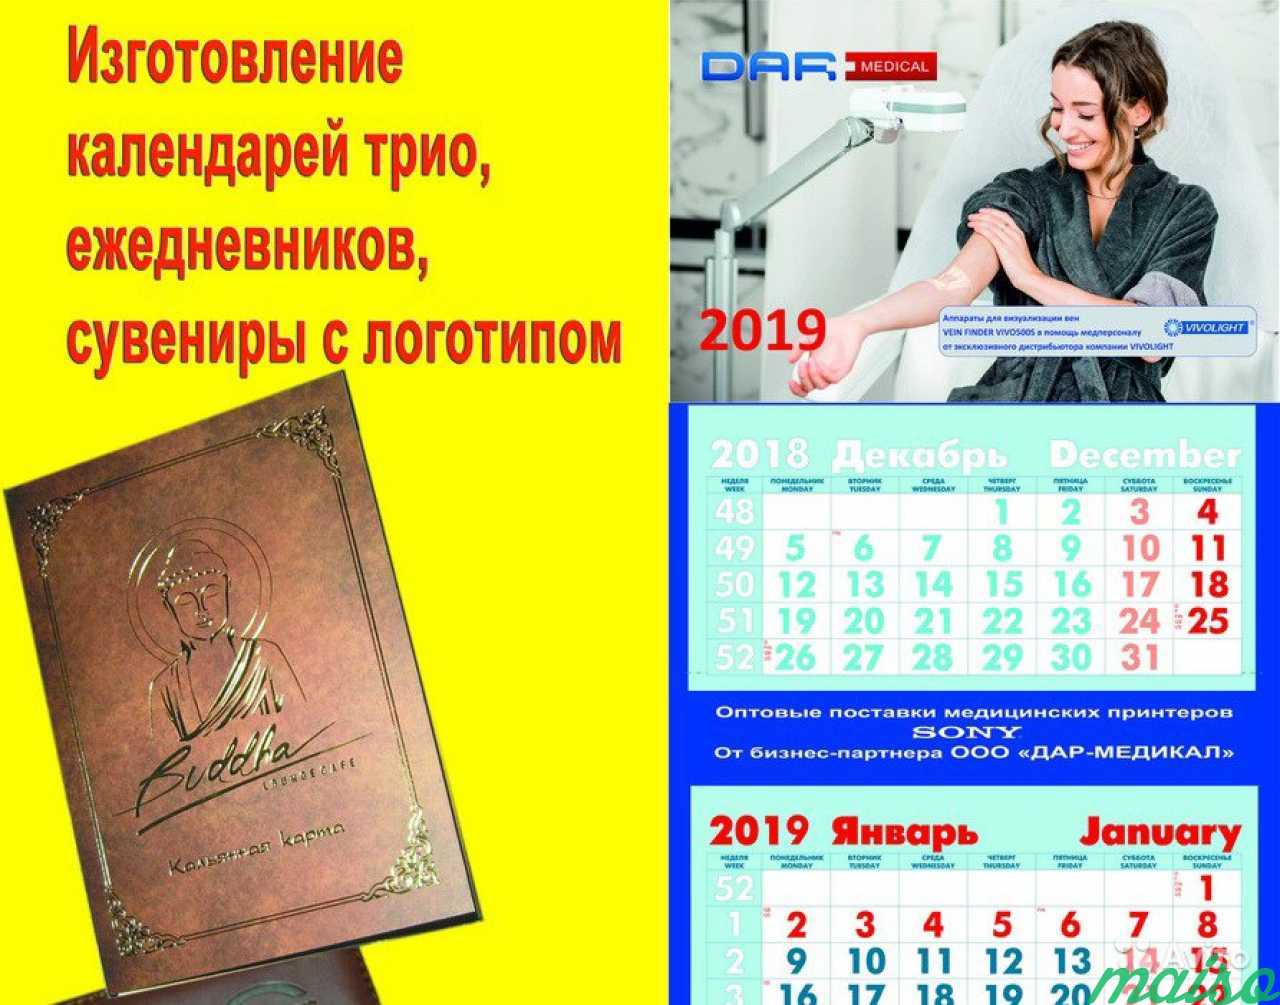 Изготовление календарей трио в Санкт-Петербурге. Фото 1